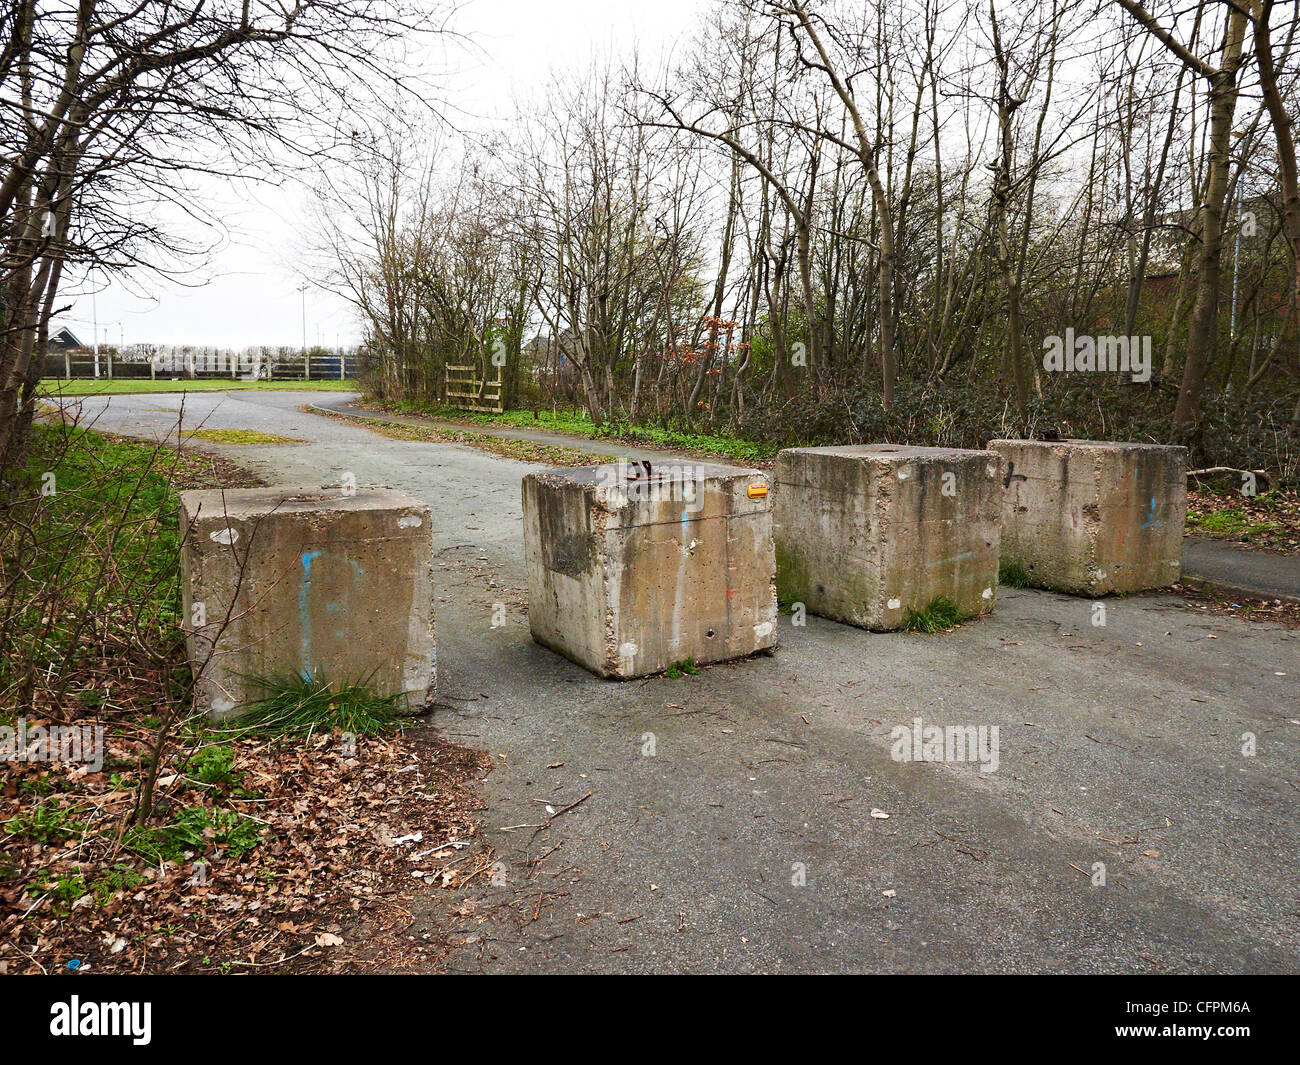 Concrete road block uk Stock Photo - Alamy